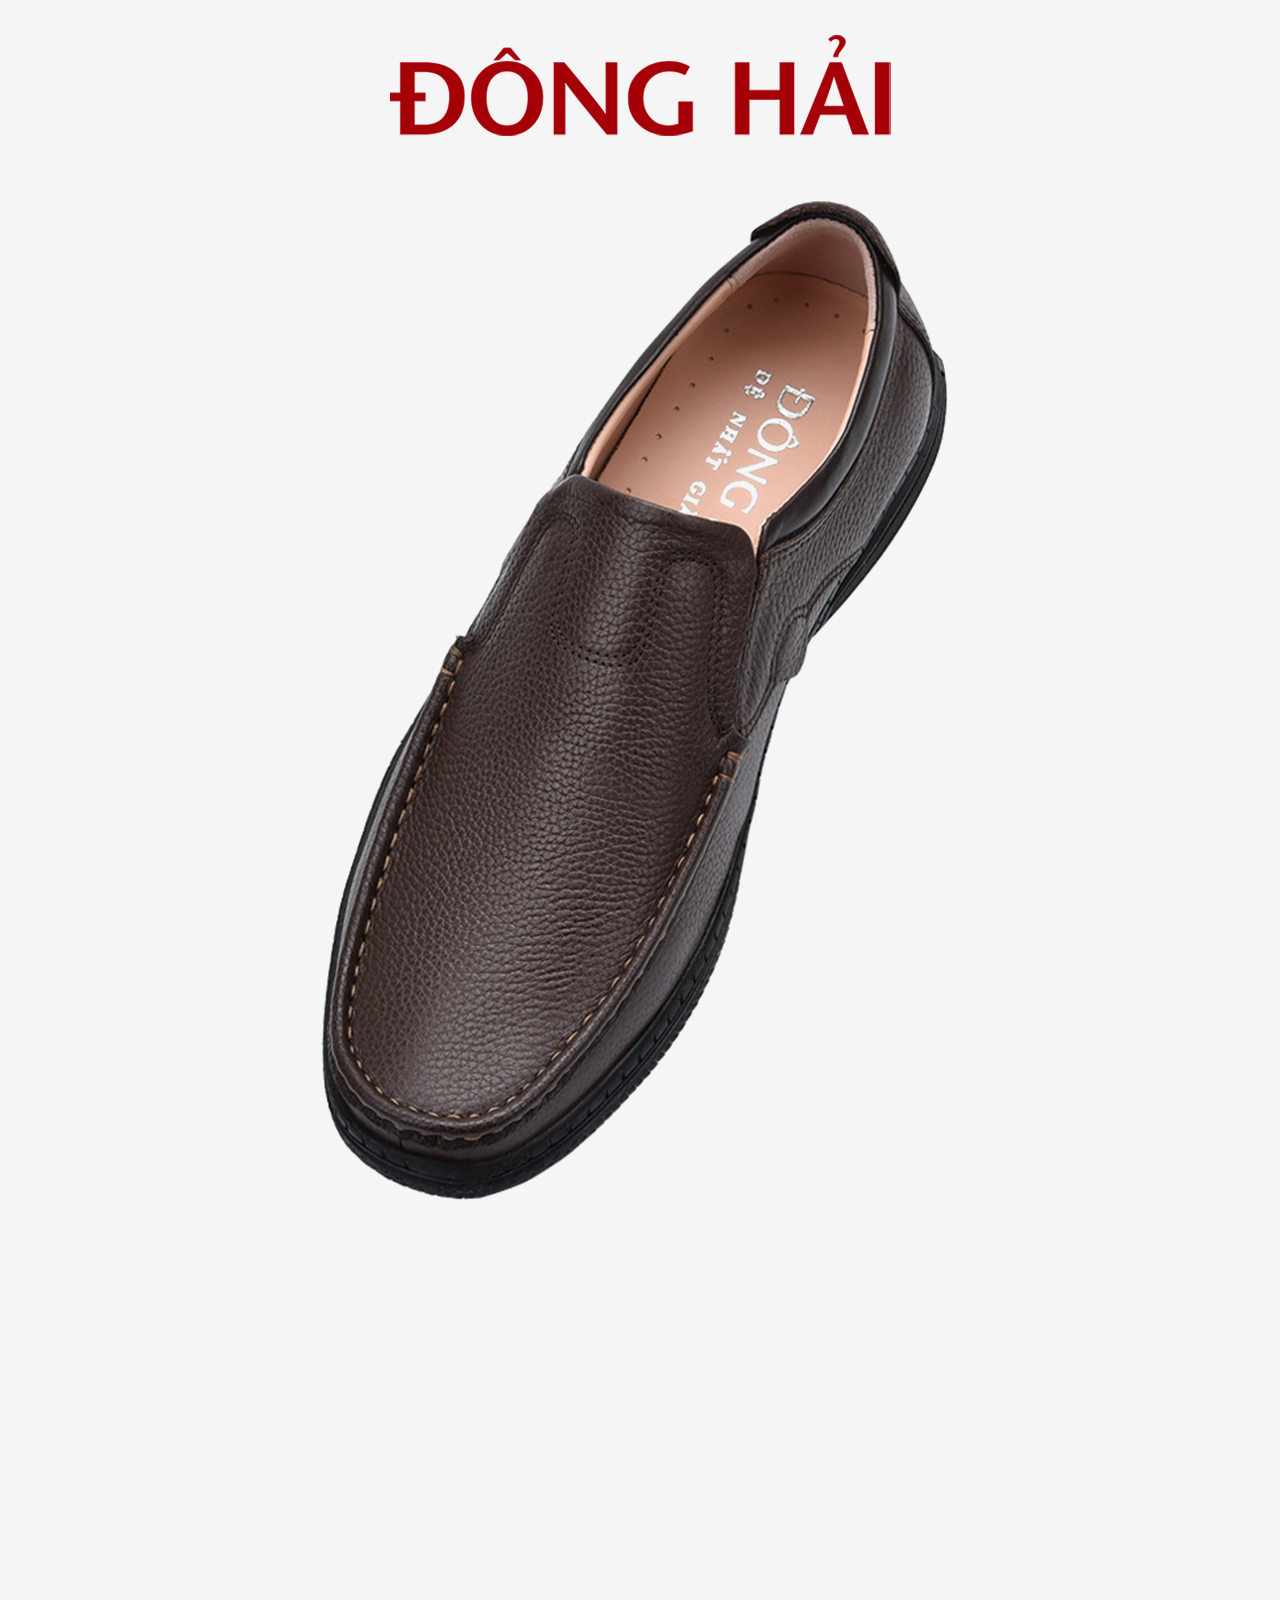 Giày lười nam Đông Hải da bò cao cấp lộ rõ vân tăng vẻ  nam tính cùng thiết kế tinh xảo dễ phối đồ - G2279